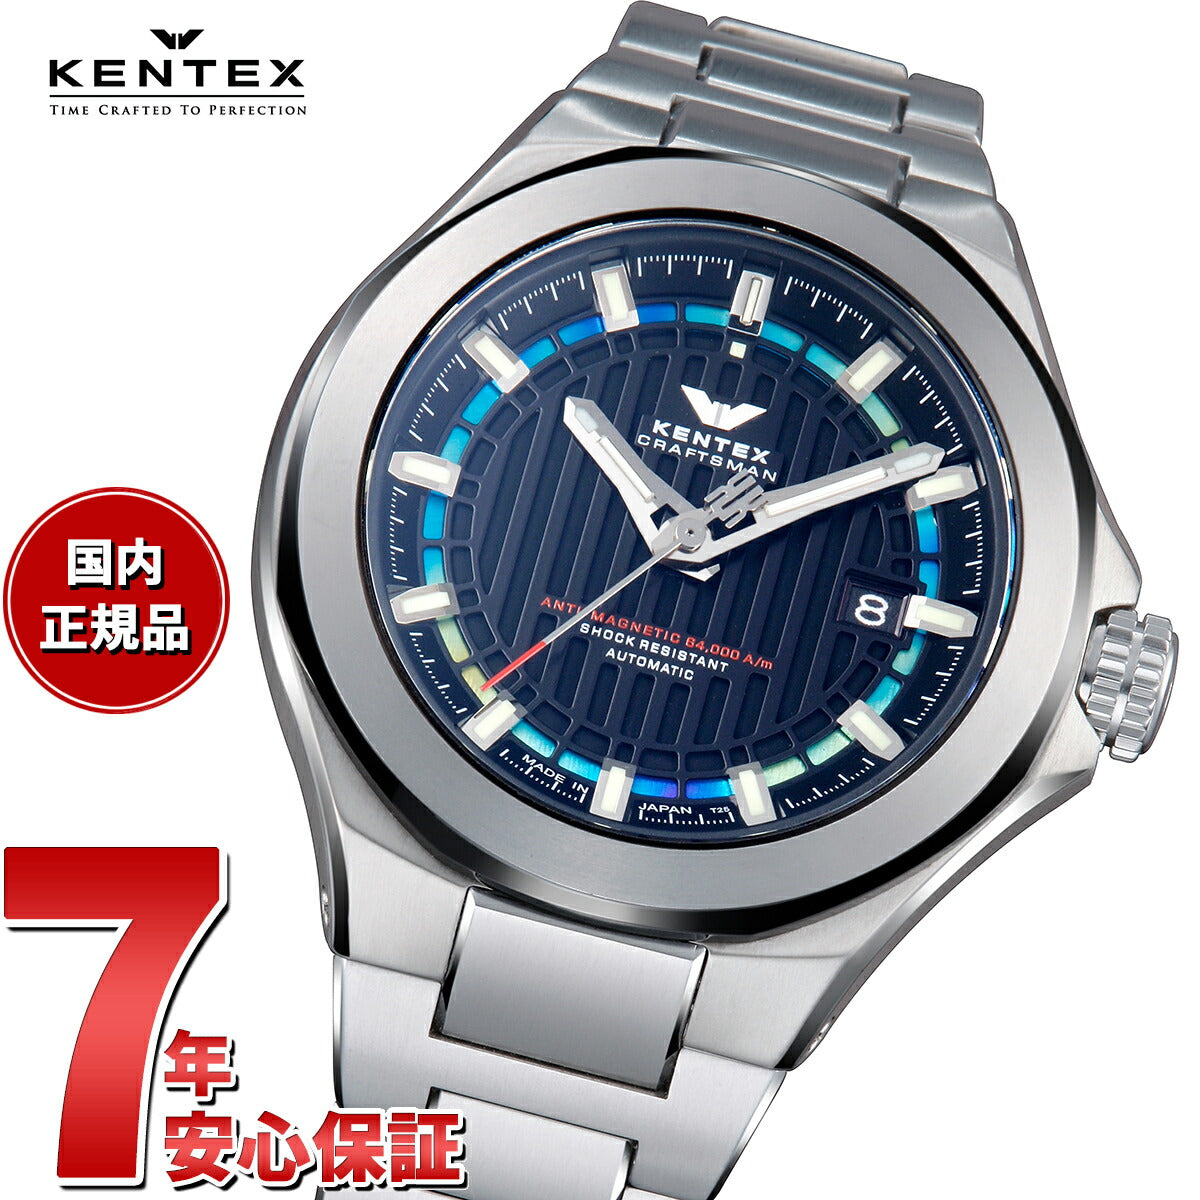 ケンテックス KENTEX クラフツマン プレステージ ブルー 限定モデル S526X-08 腕時計 メンズ 自動巻き CRAFTSMAN  PRESTIGE BLUE